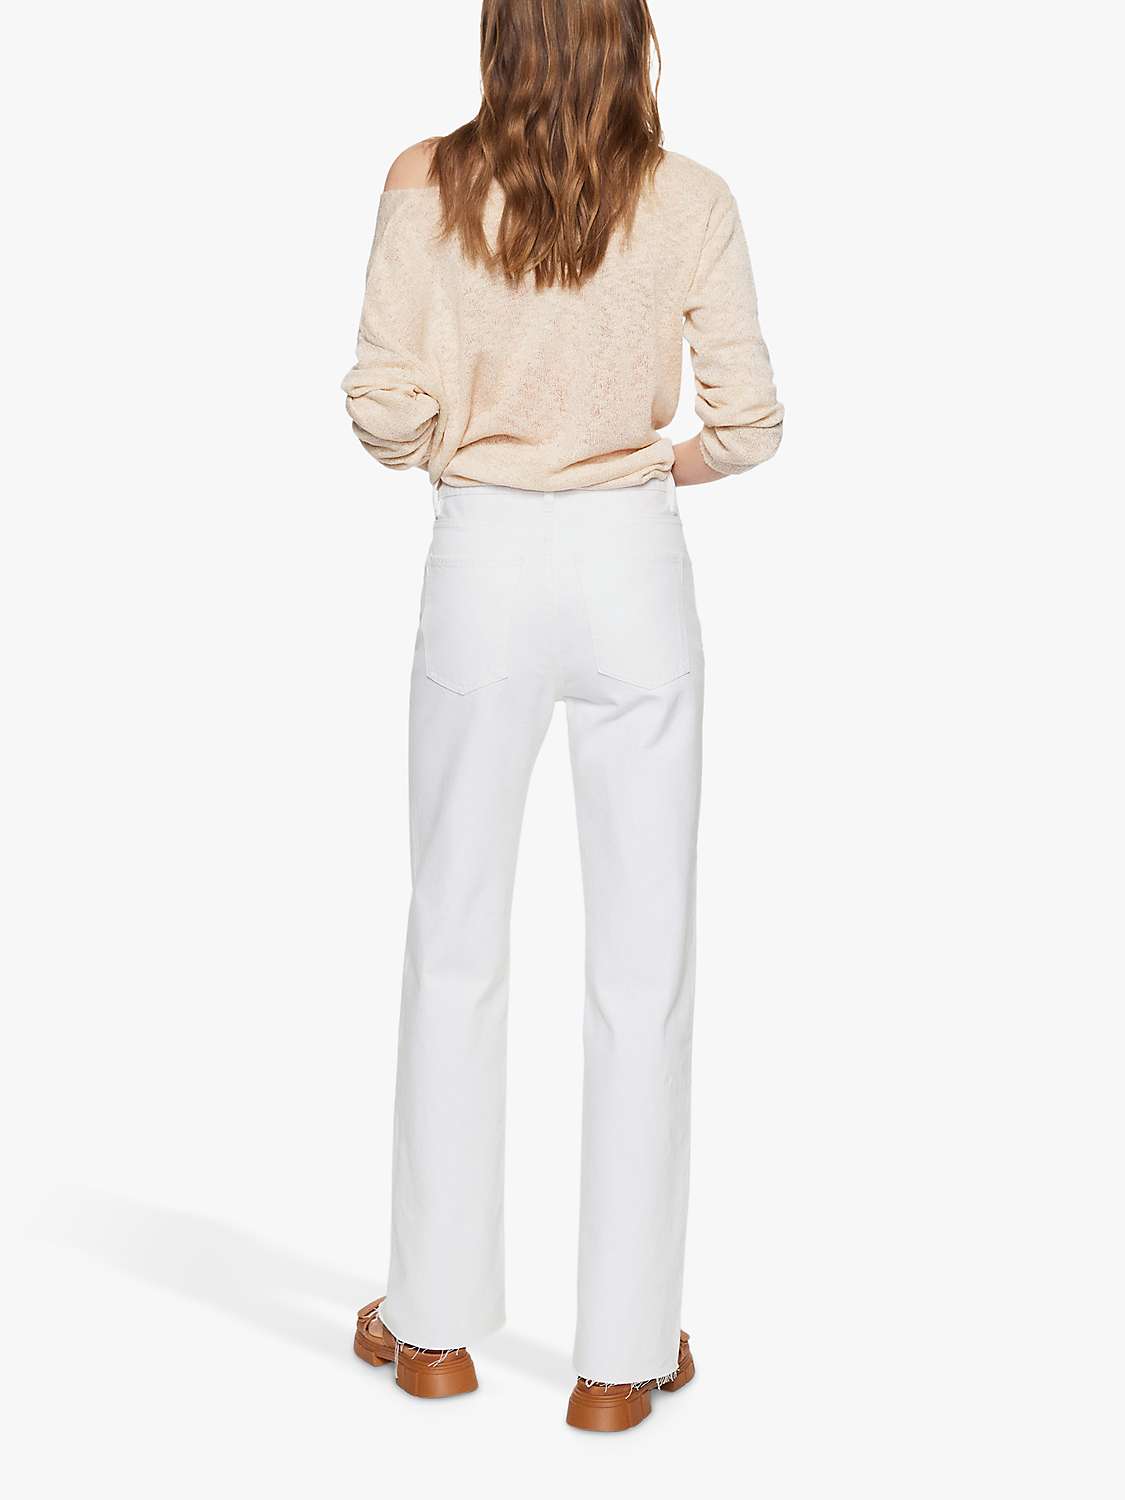 Mango Nora Bootcut Jeans, White at John Lewis & Partners